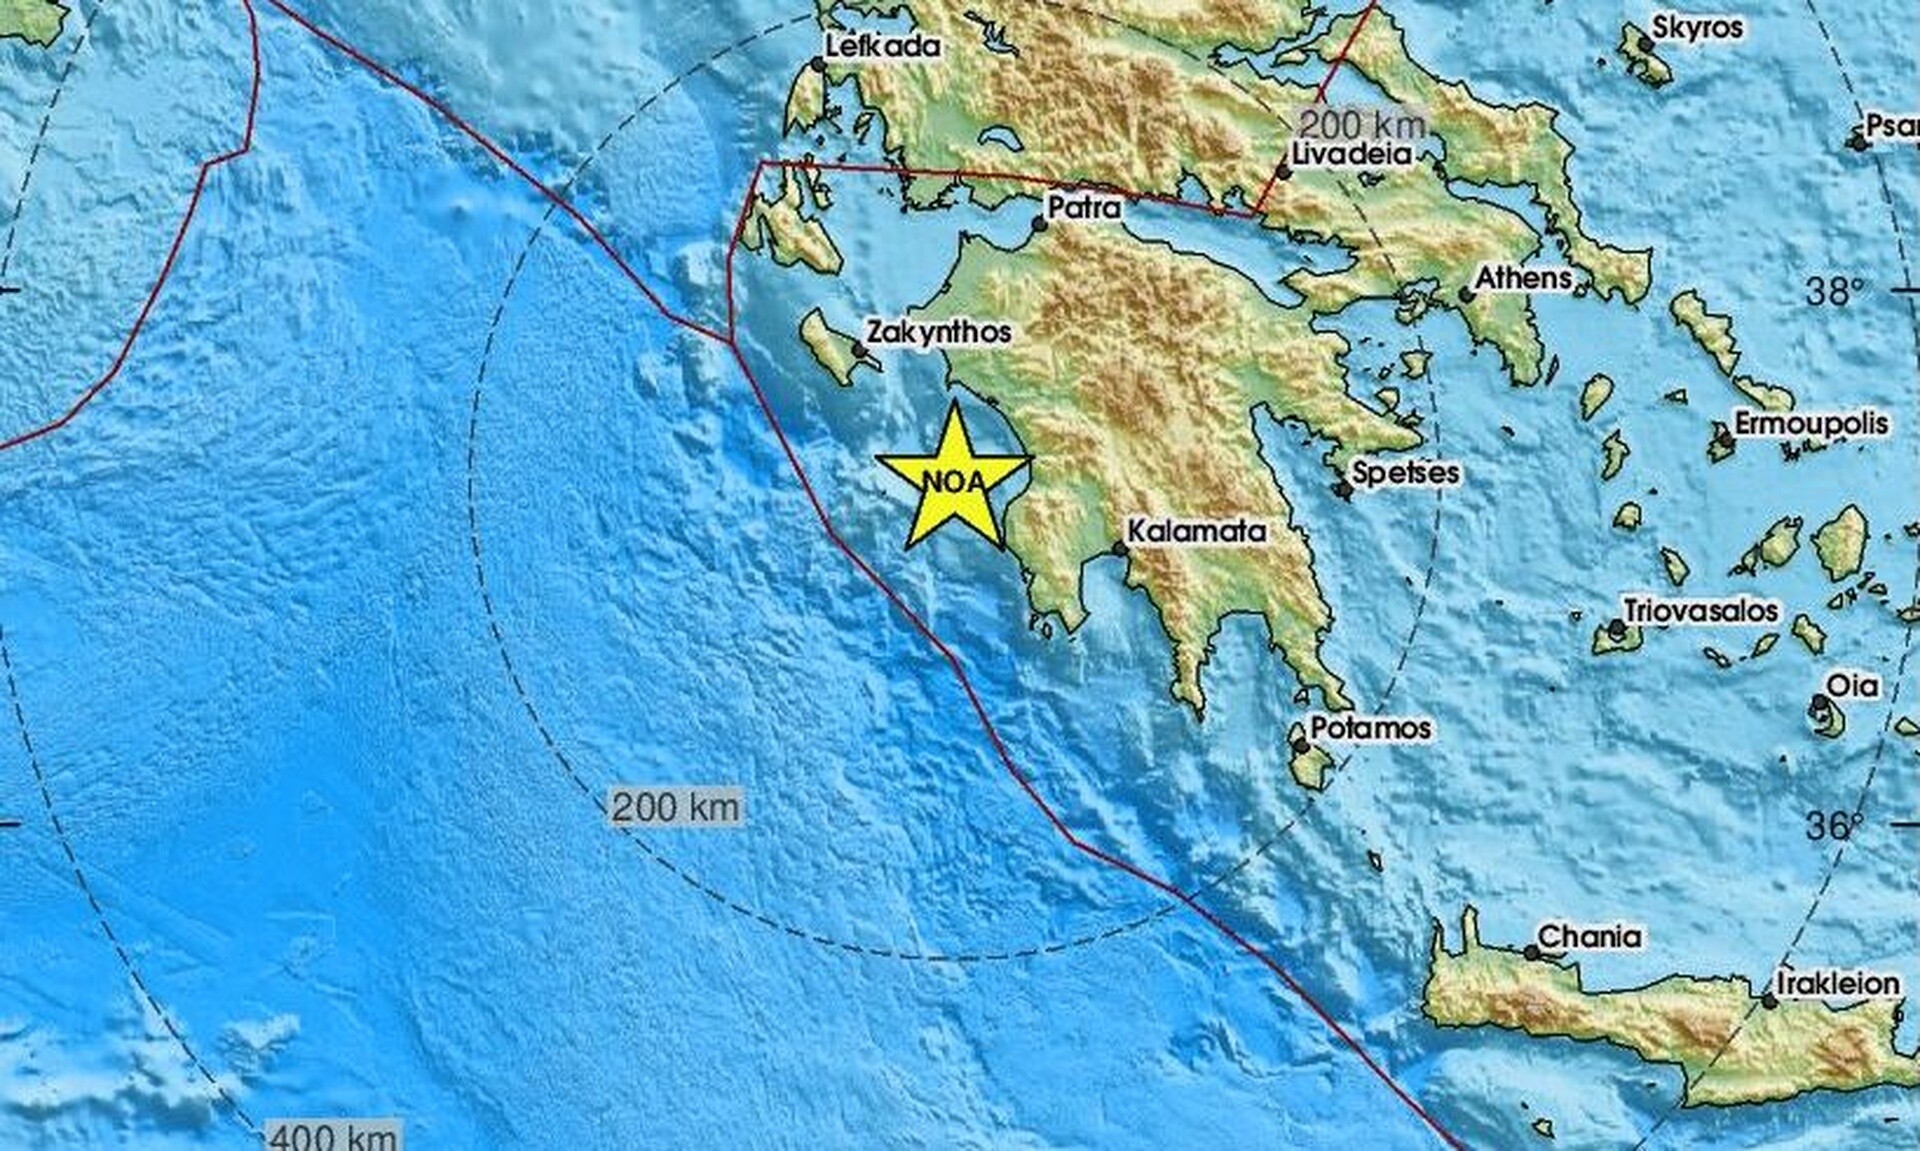 Σεισμός δυτικά της Πελοποννήσου - Κοντά στις Στροφάδες το επίκεντρο